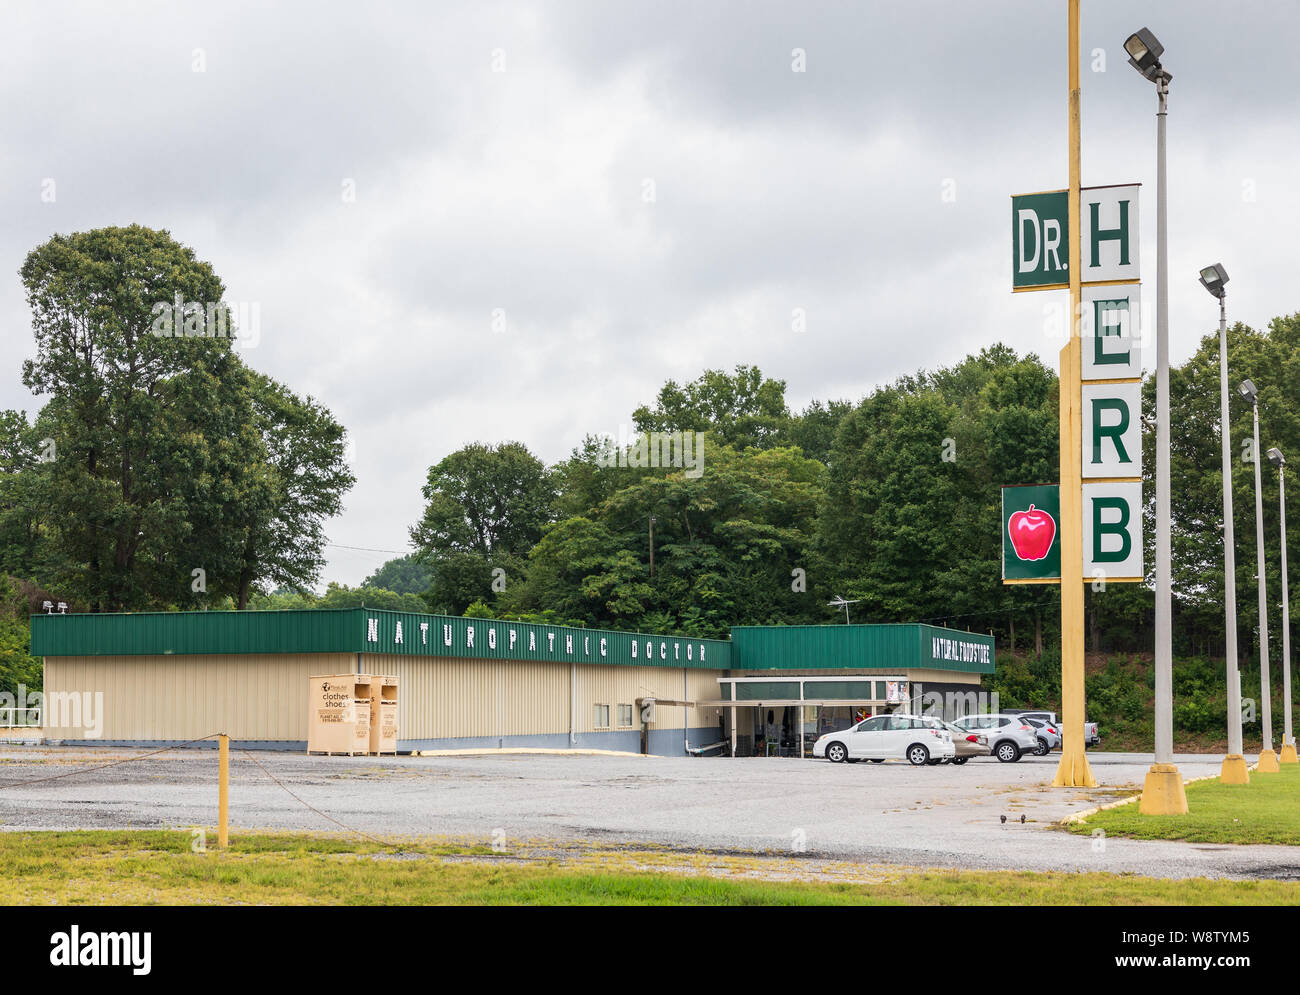 HICKORY, NC, EE.UU.--2 de agosto de 2019: la tienda de alimentos naturales, con carteles indicando 'Dr. Herb' y 'naturópata'. Foto de stock